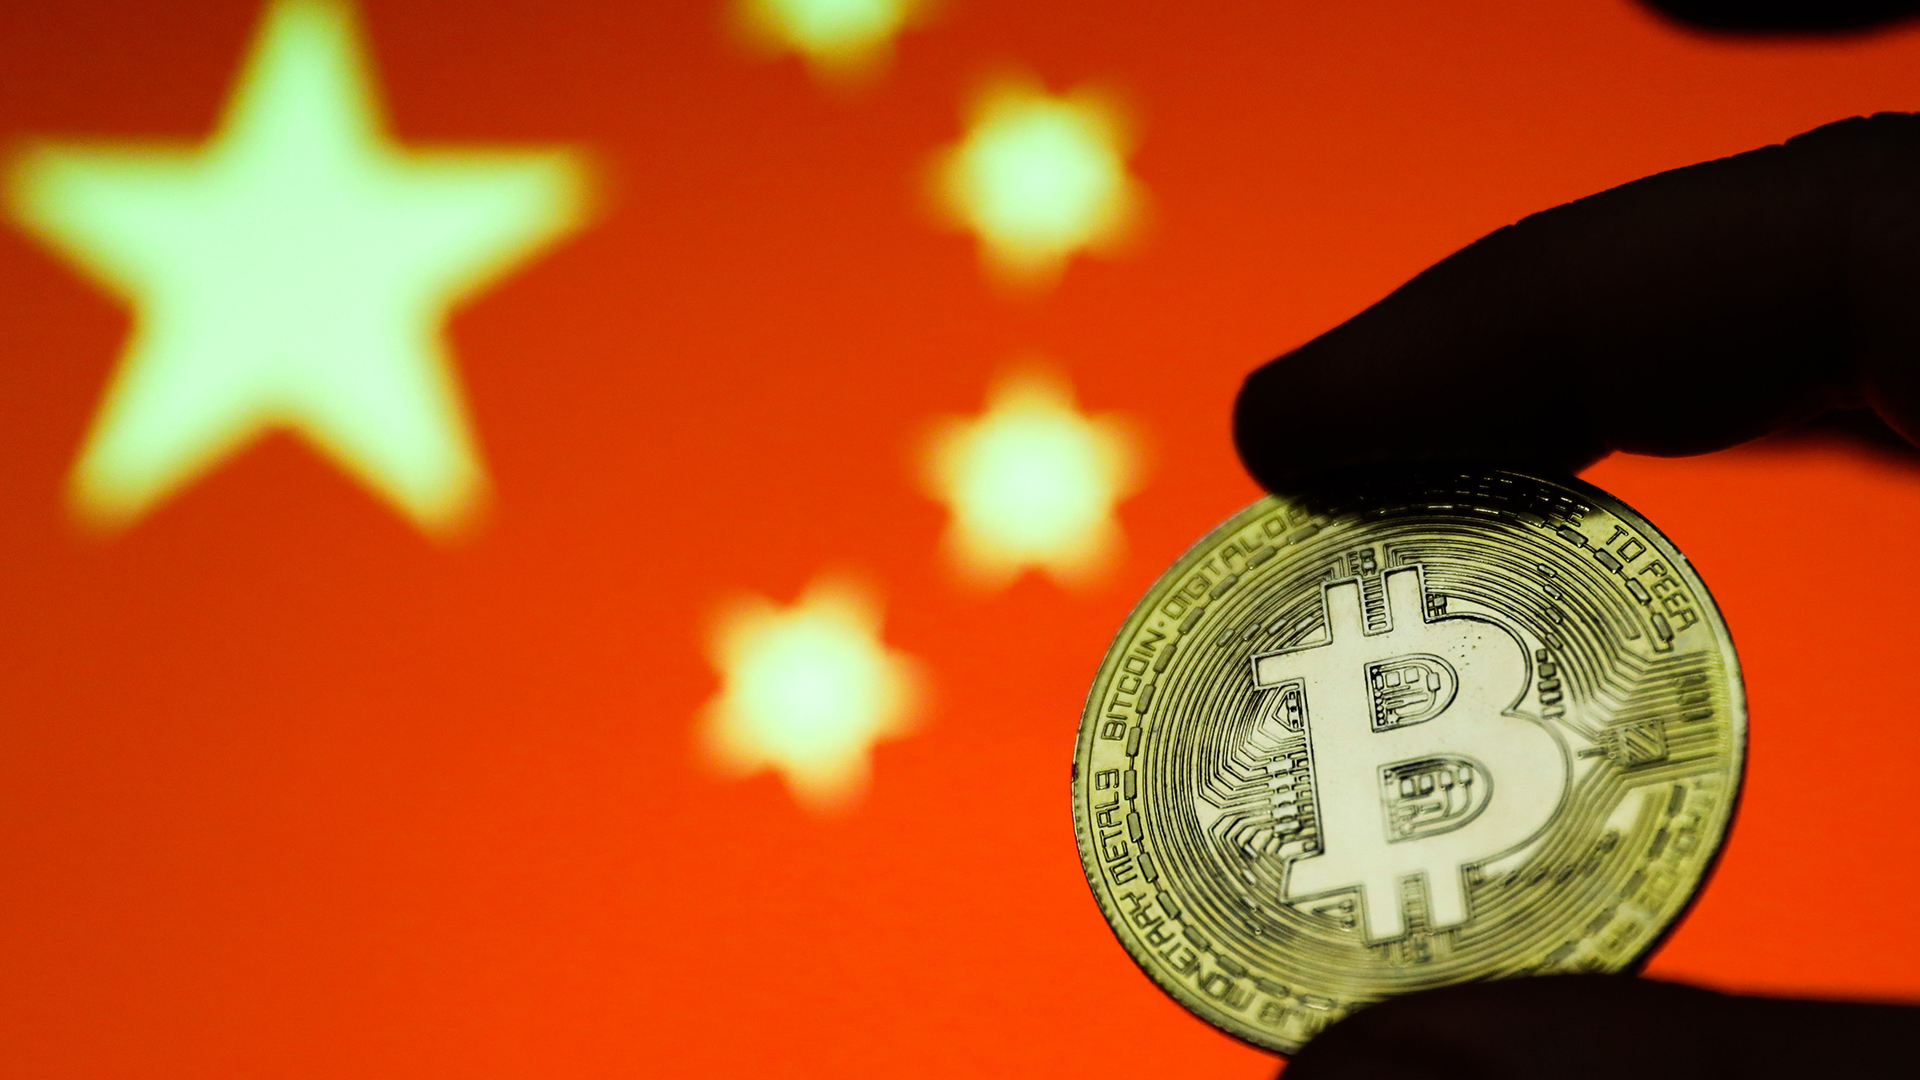 Kryptowährung Bitcoin mit chinesischer Flagge im Hintergrund | picture alliance / NurPhoto